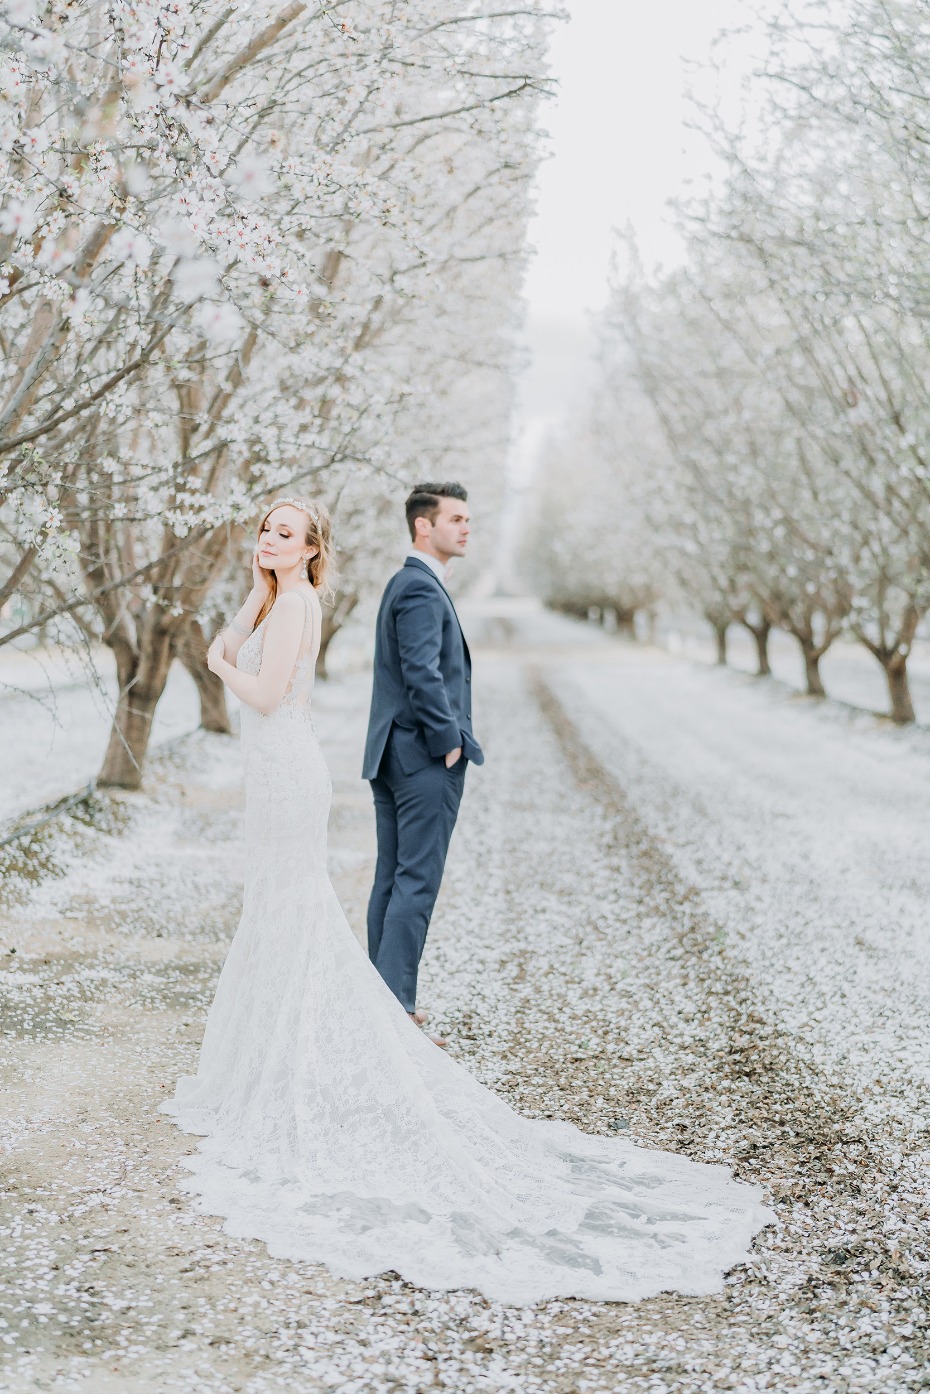 Gorgeous Almond orchard wedding inspo